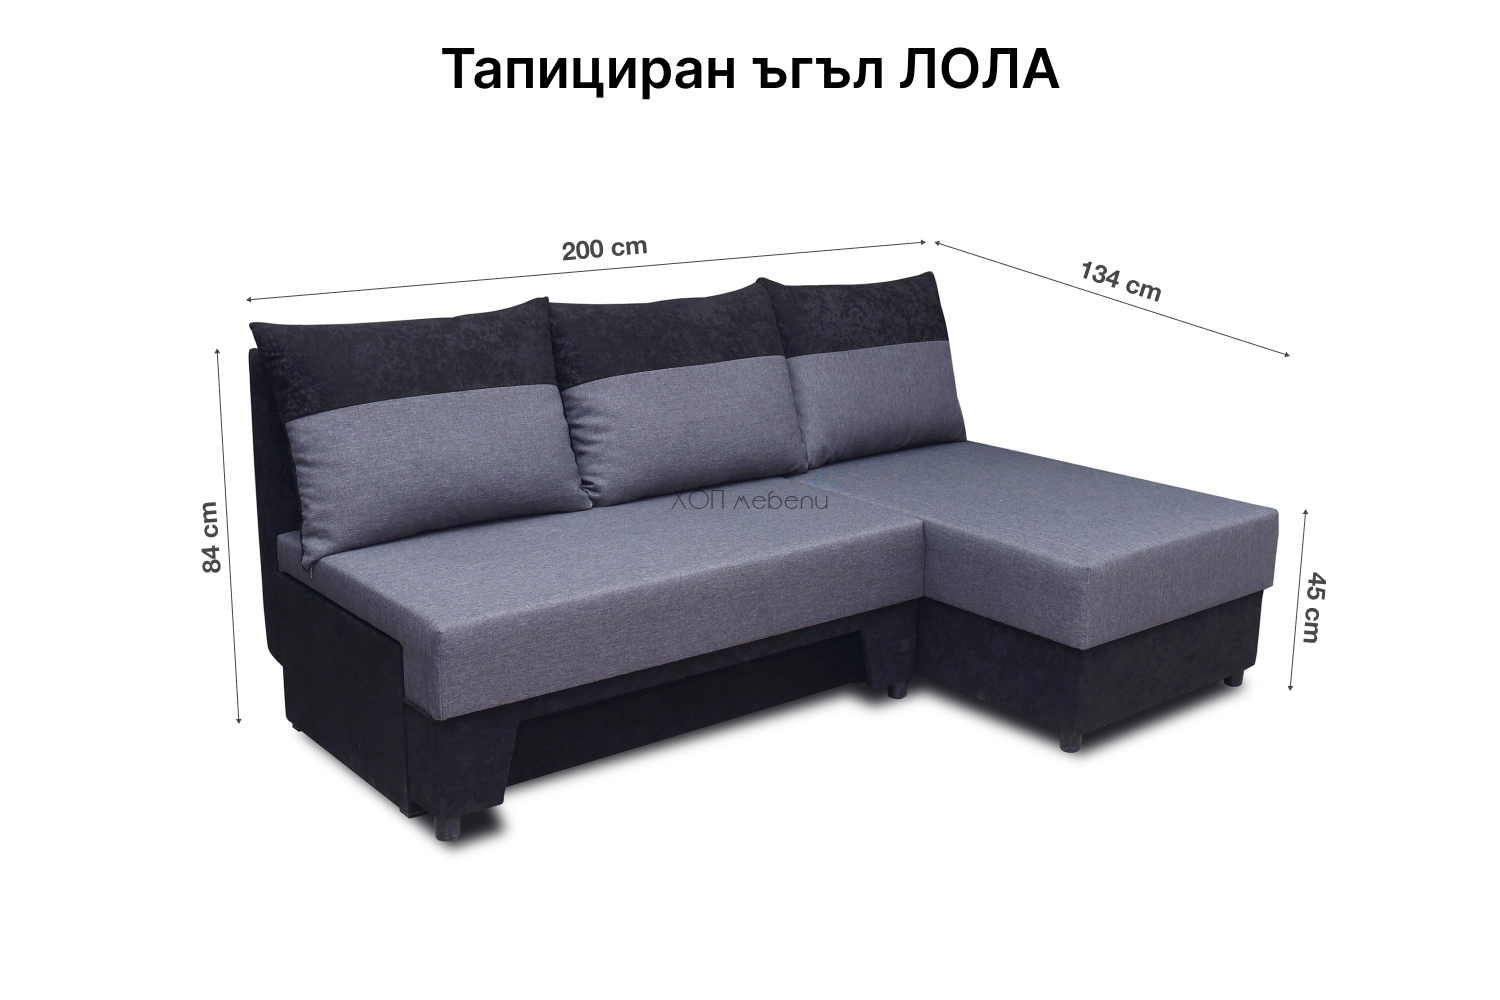 Размери на Тапициран ъгъл ЛОЛА ID 13406 - 1